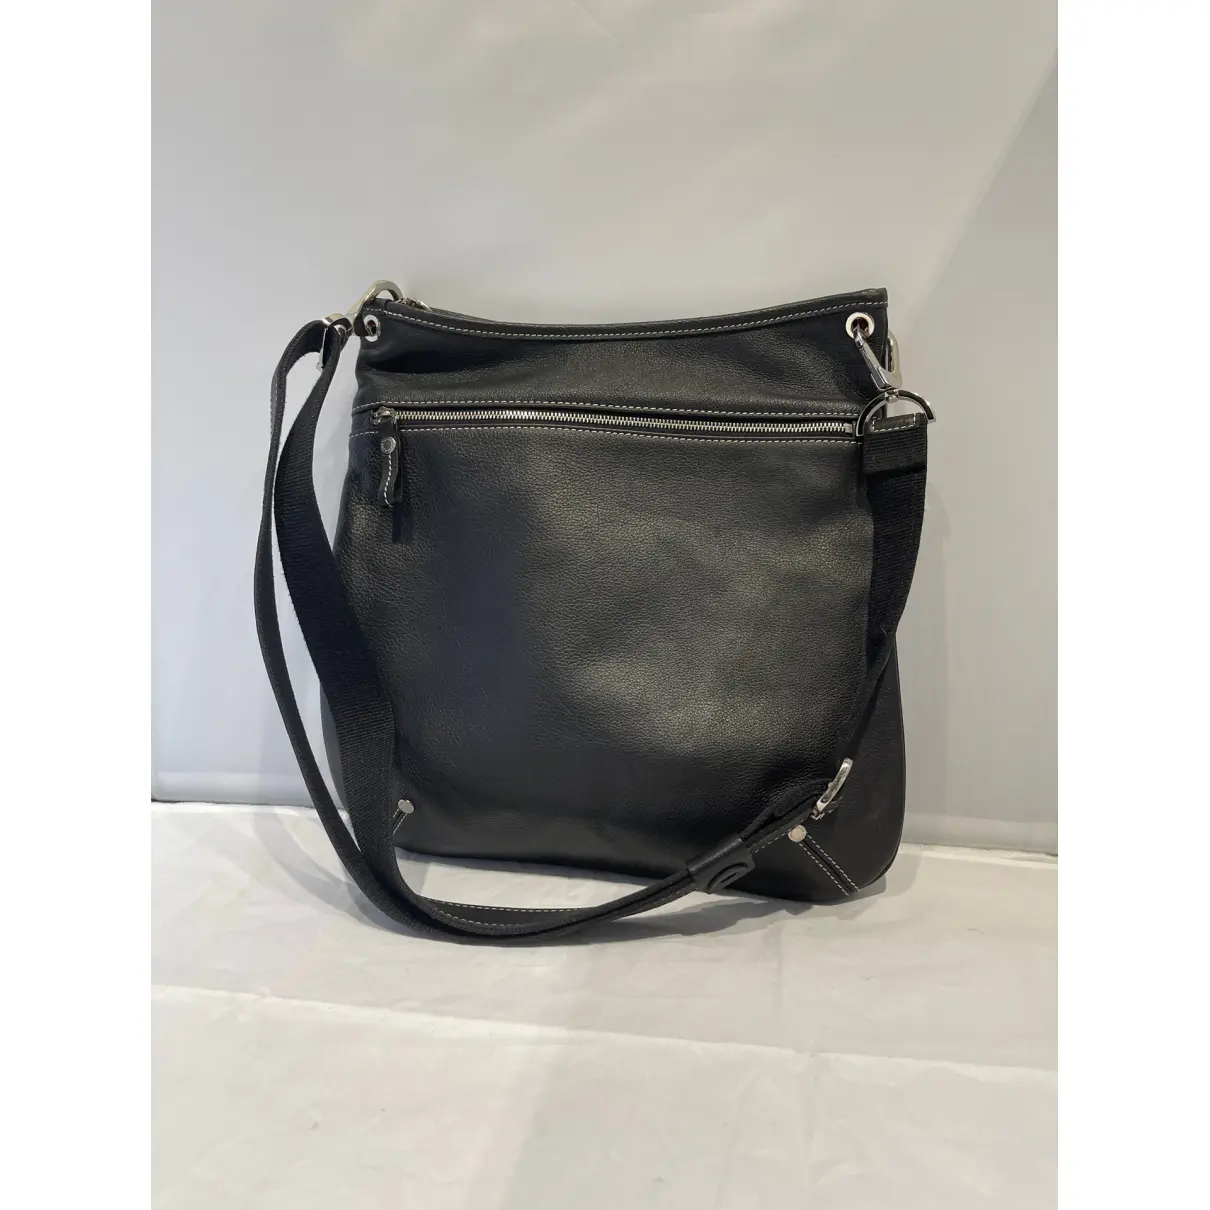 Buy Longchamp Balzane leather handbag online